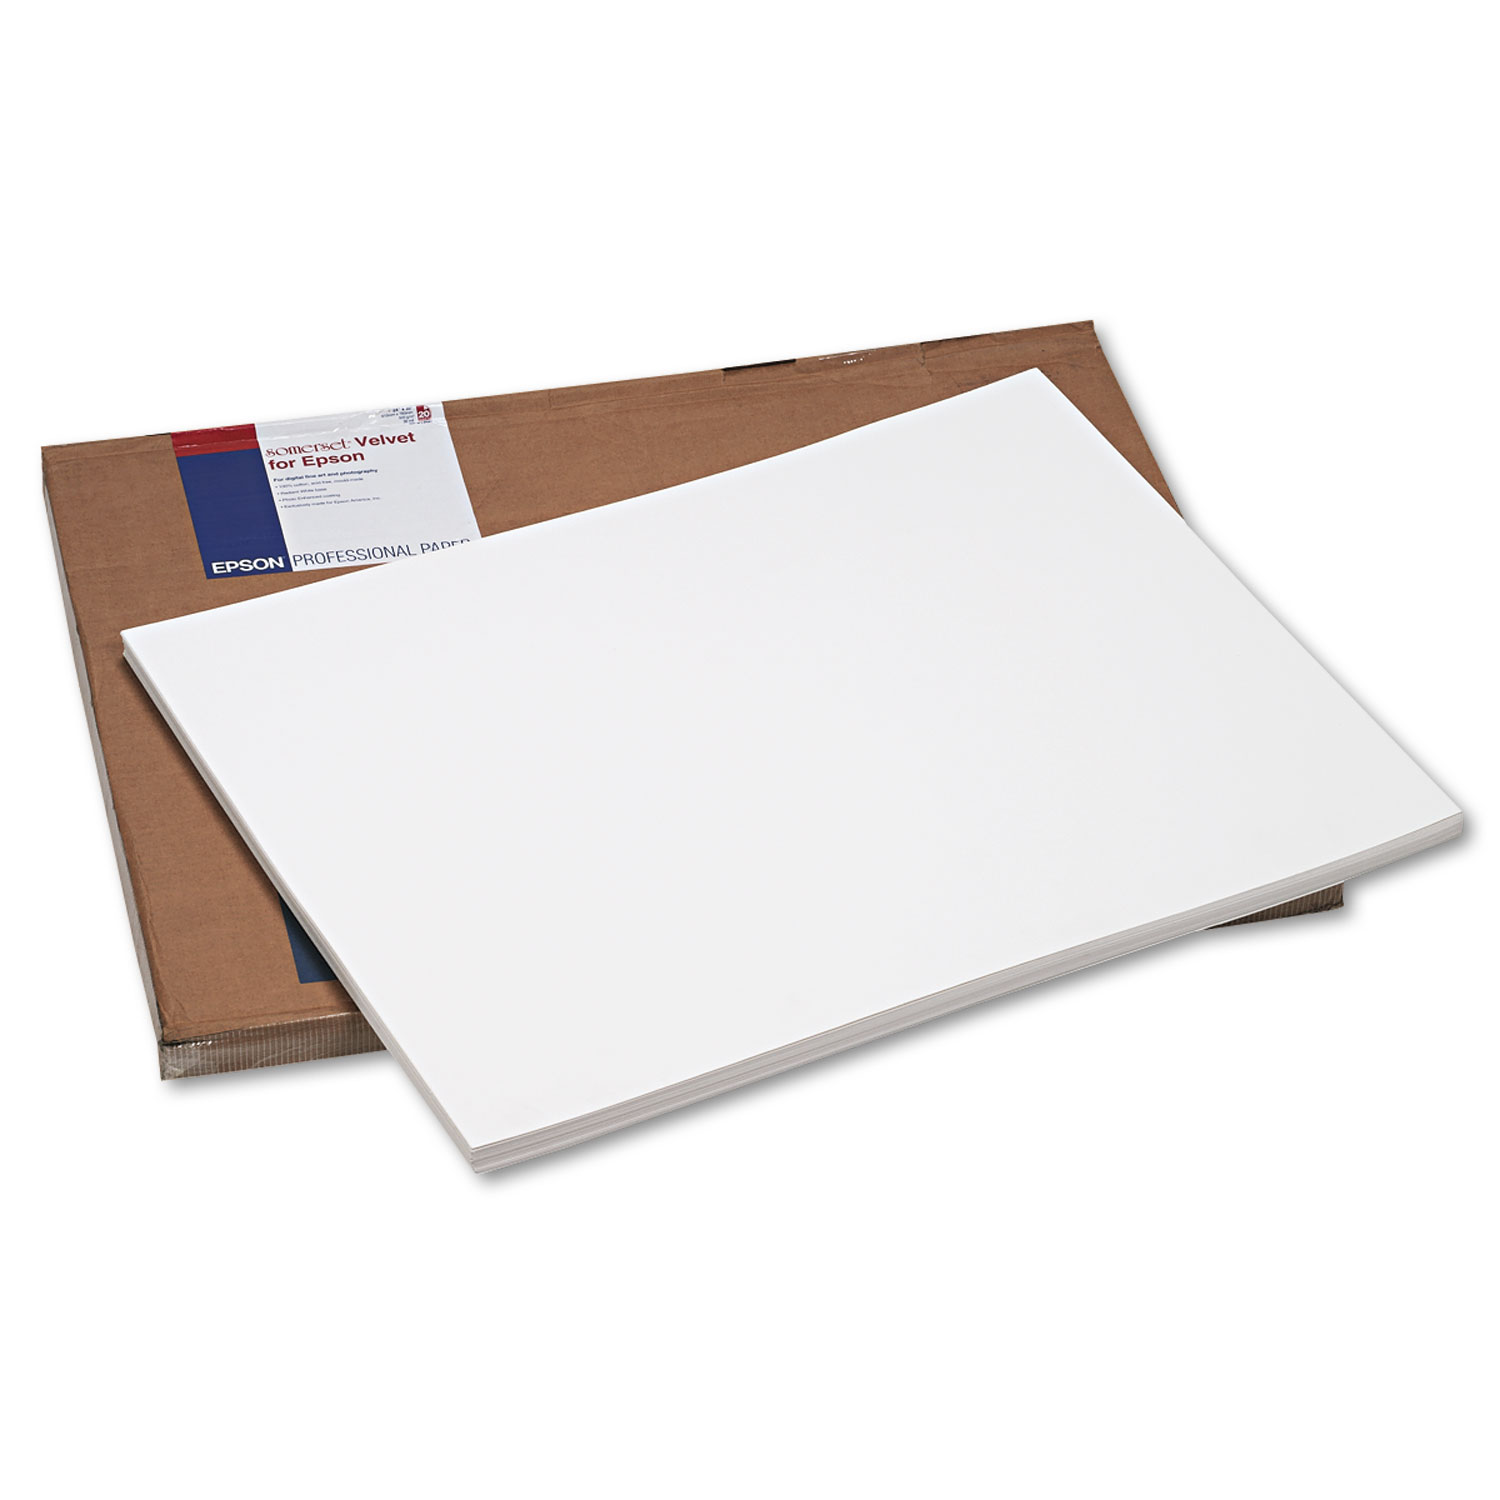 Somerset Velvet Fine Art Paper, 36 x 44, 505 g/m2, White, 10 Sheets